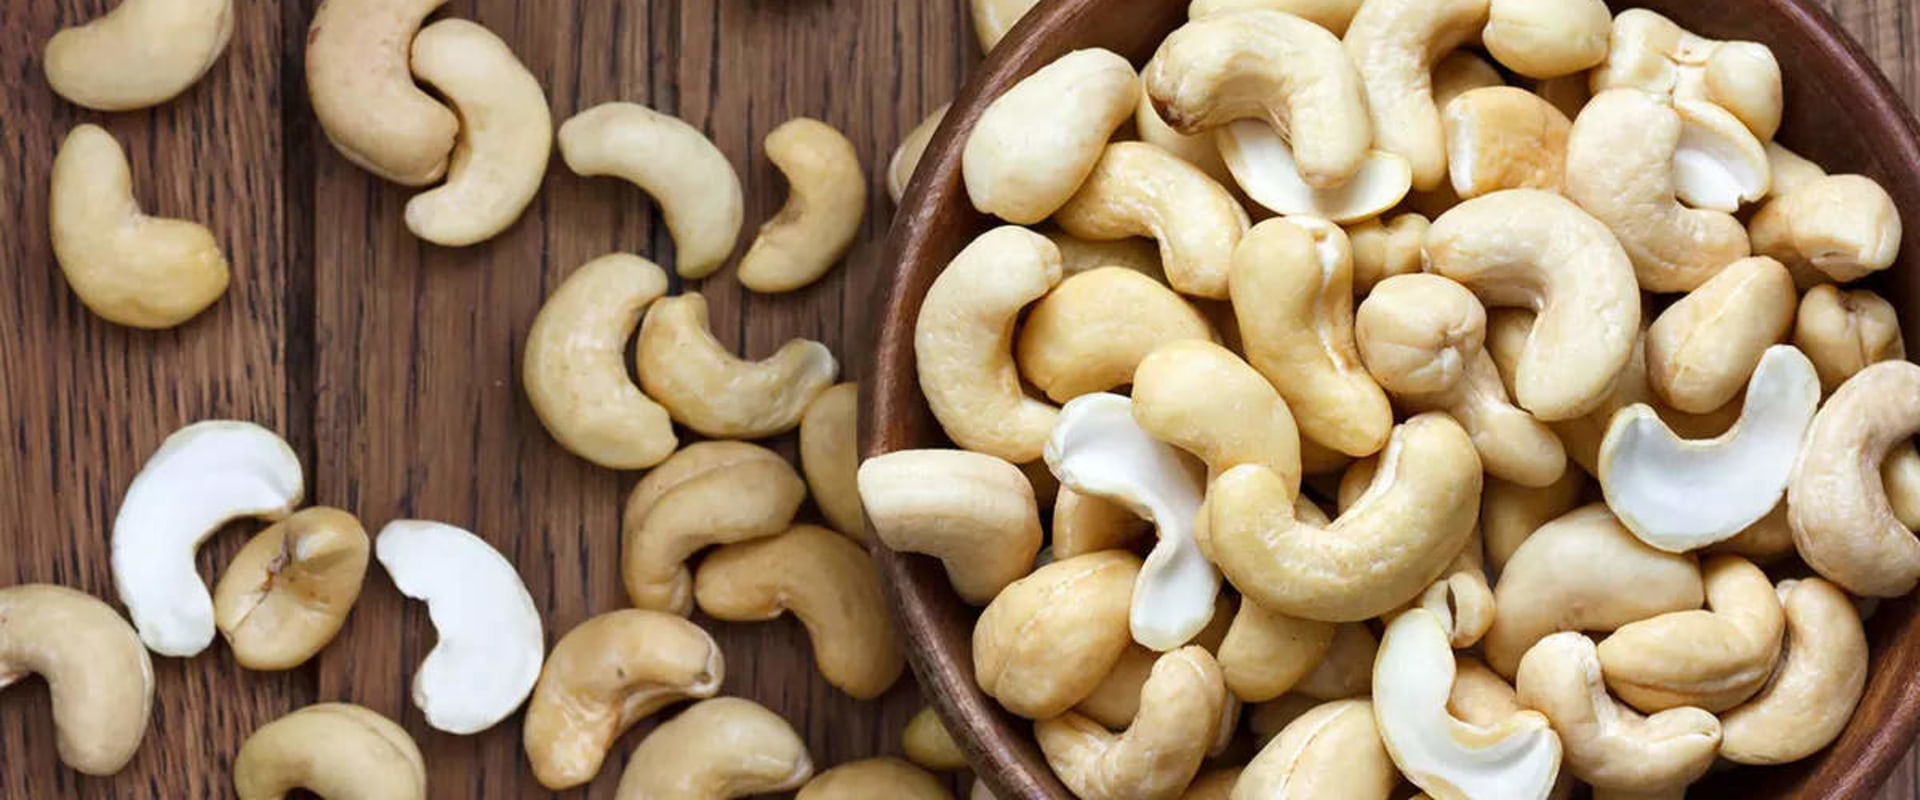 How long do bulk cashews last?